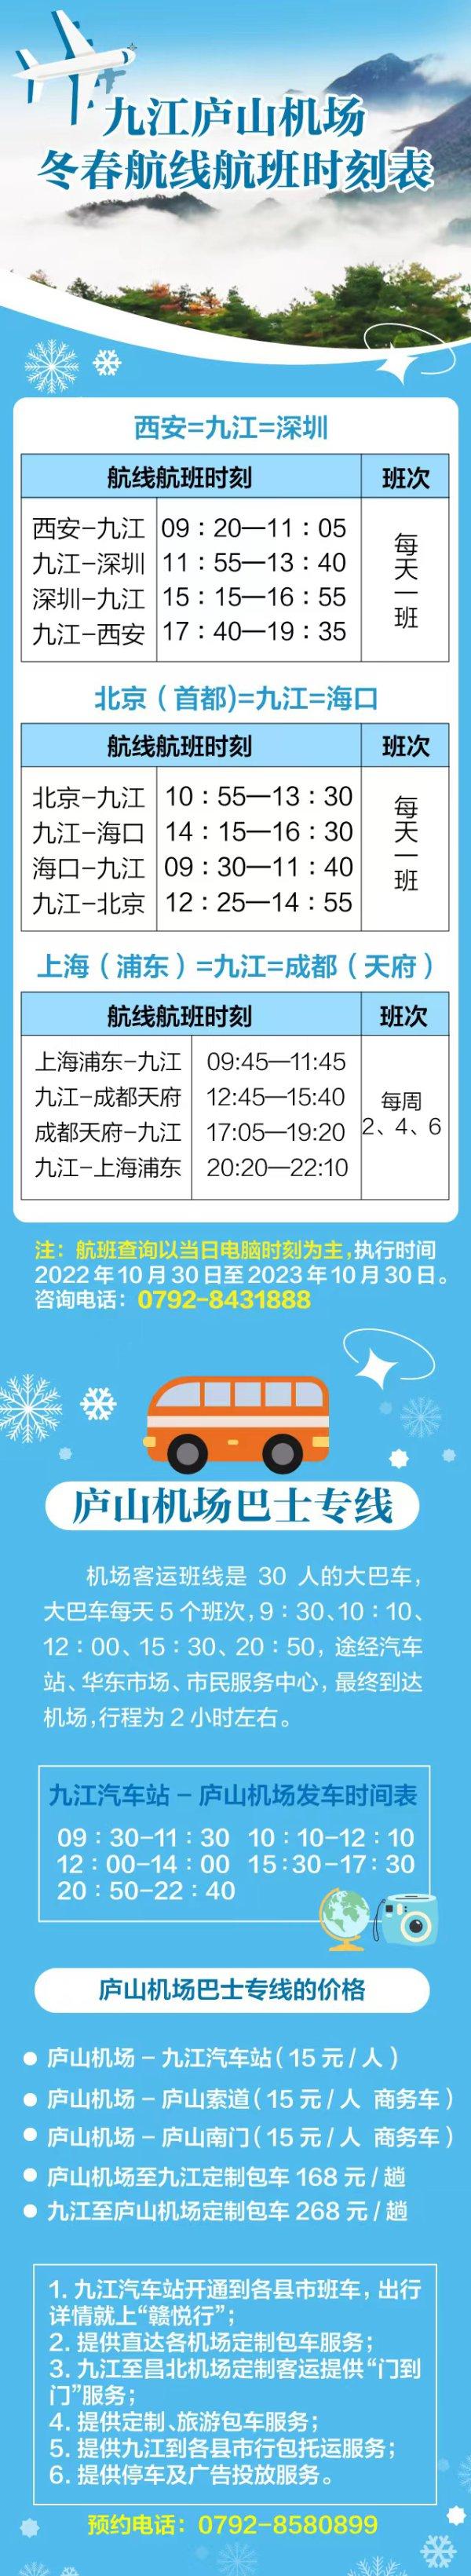 九江庐山机场预计今年春运旅客吞吐量为18万人次